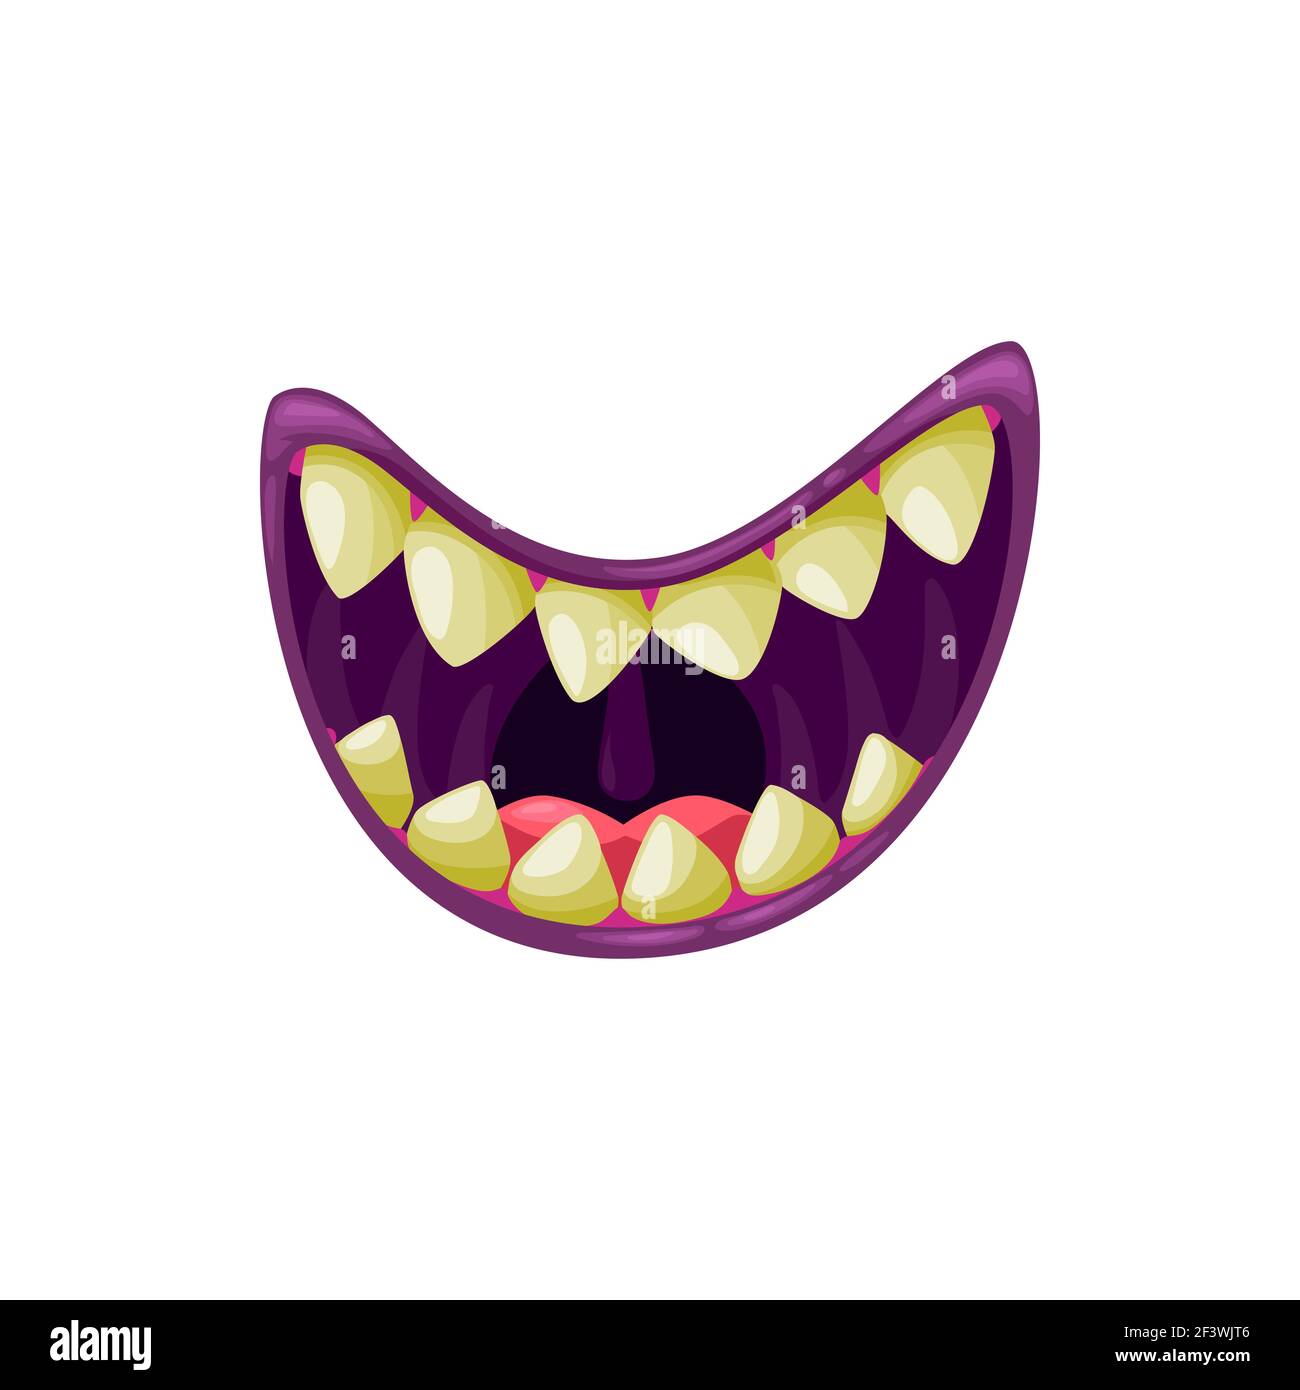 Monster bouche sourire symbole vecteur souriant, les mâchoires créepy sourire avec des dents jaunes nettes. Caricature souriante Halloween créature ouverte MAW isolée sur fond blanc Illustration de Vecteur